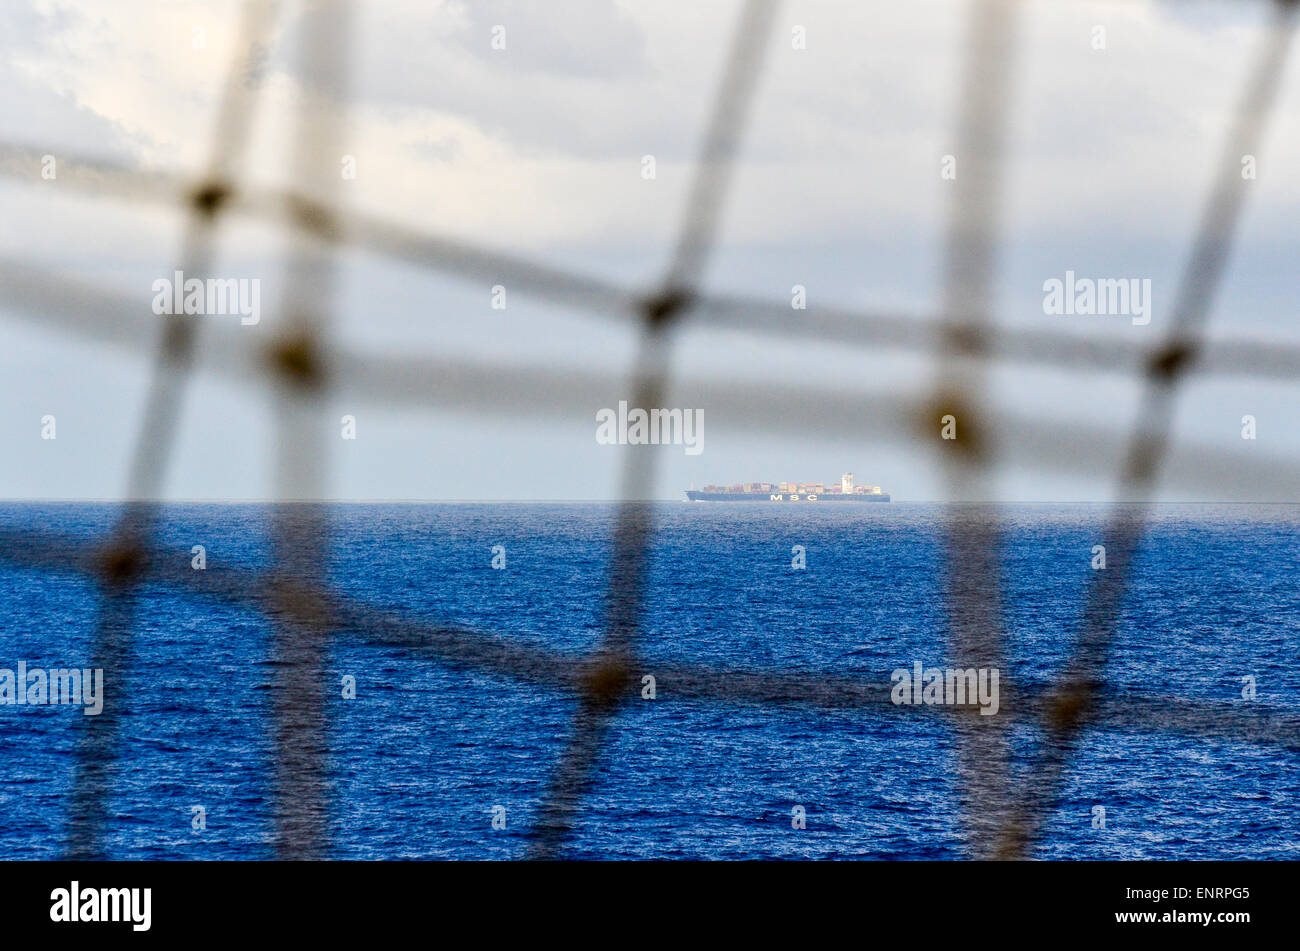 Porte-conteneurs dans l'océan Atlantique vu à travers un filet Banque D'Images